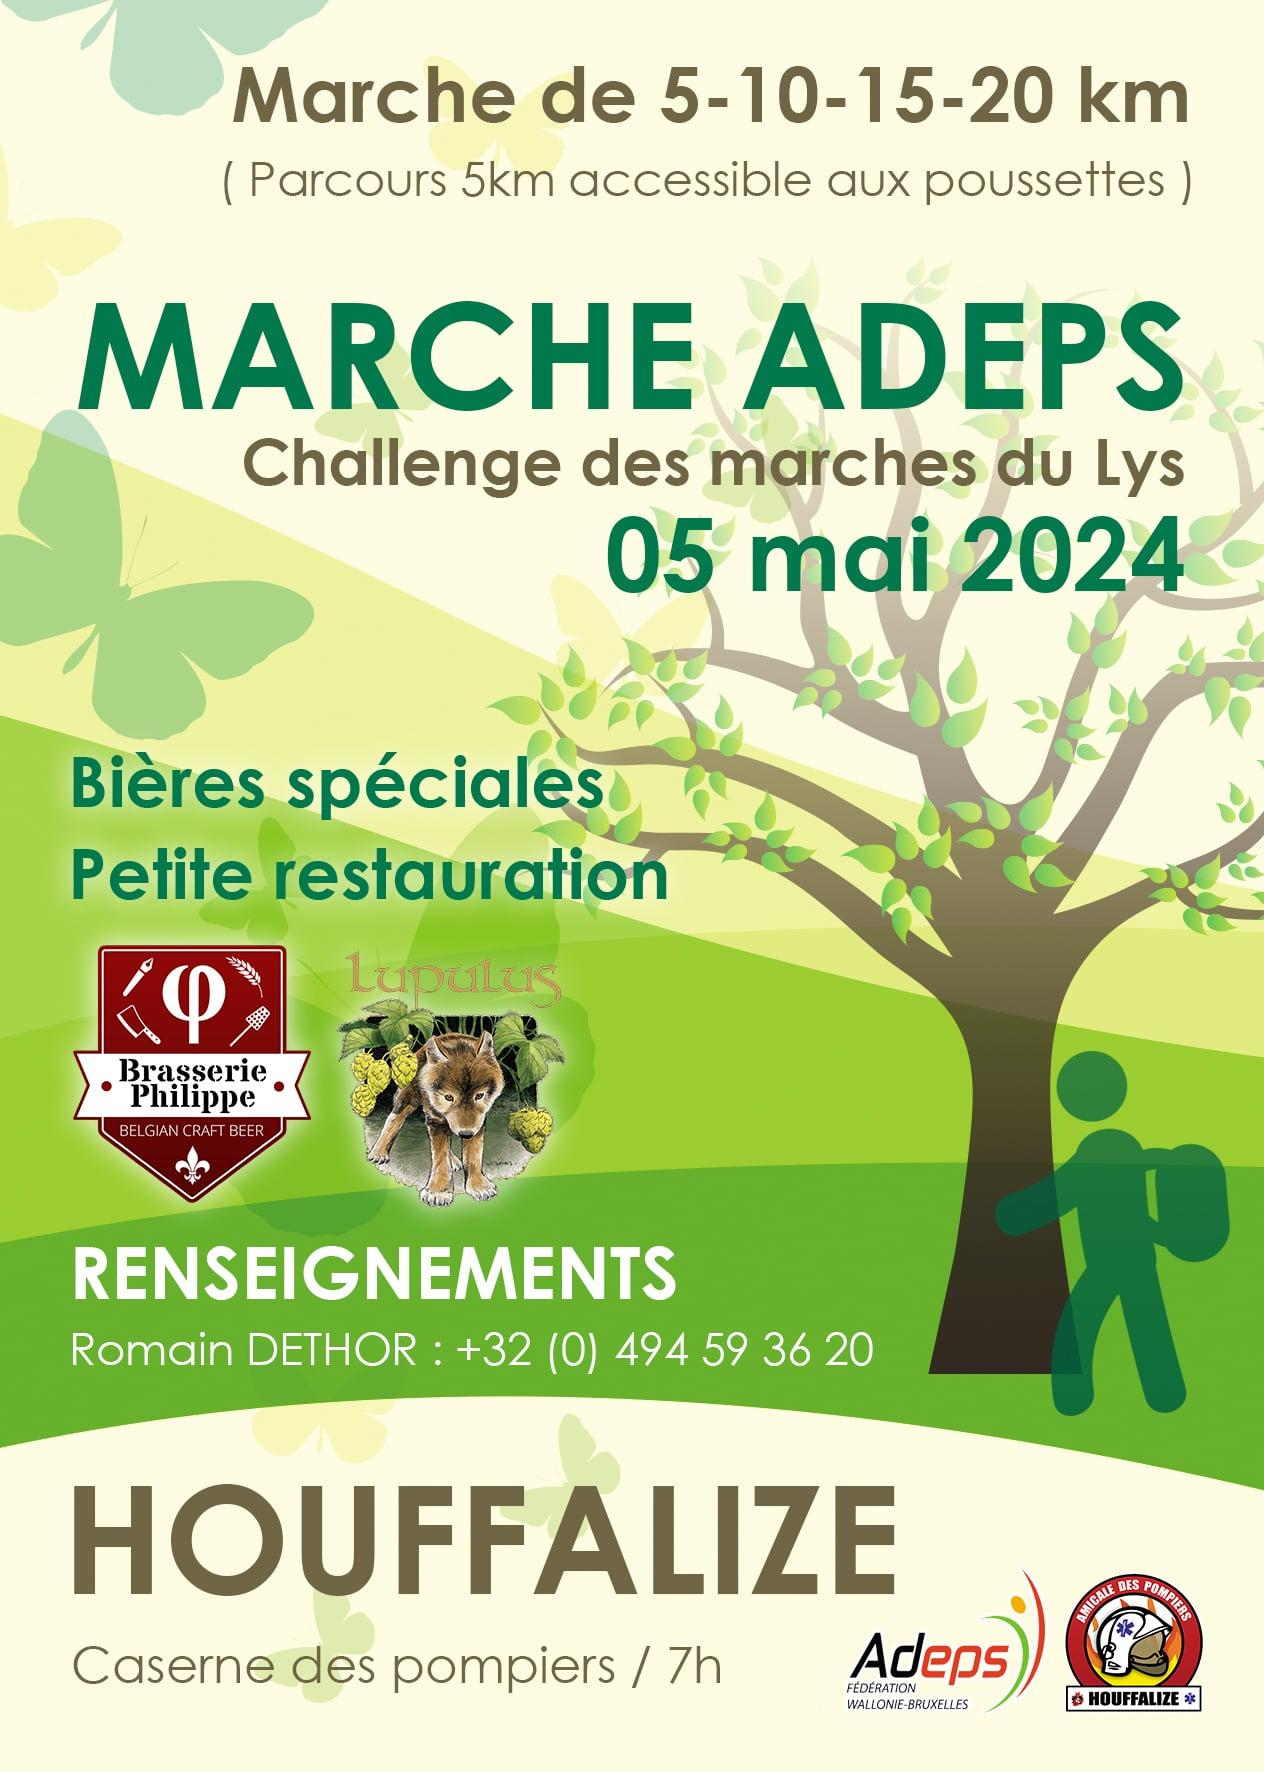 Marche Adeps - Challenge des marches du Lys